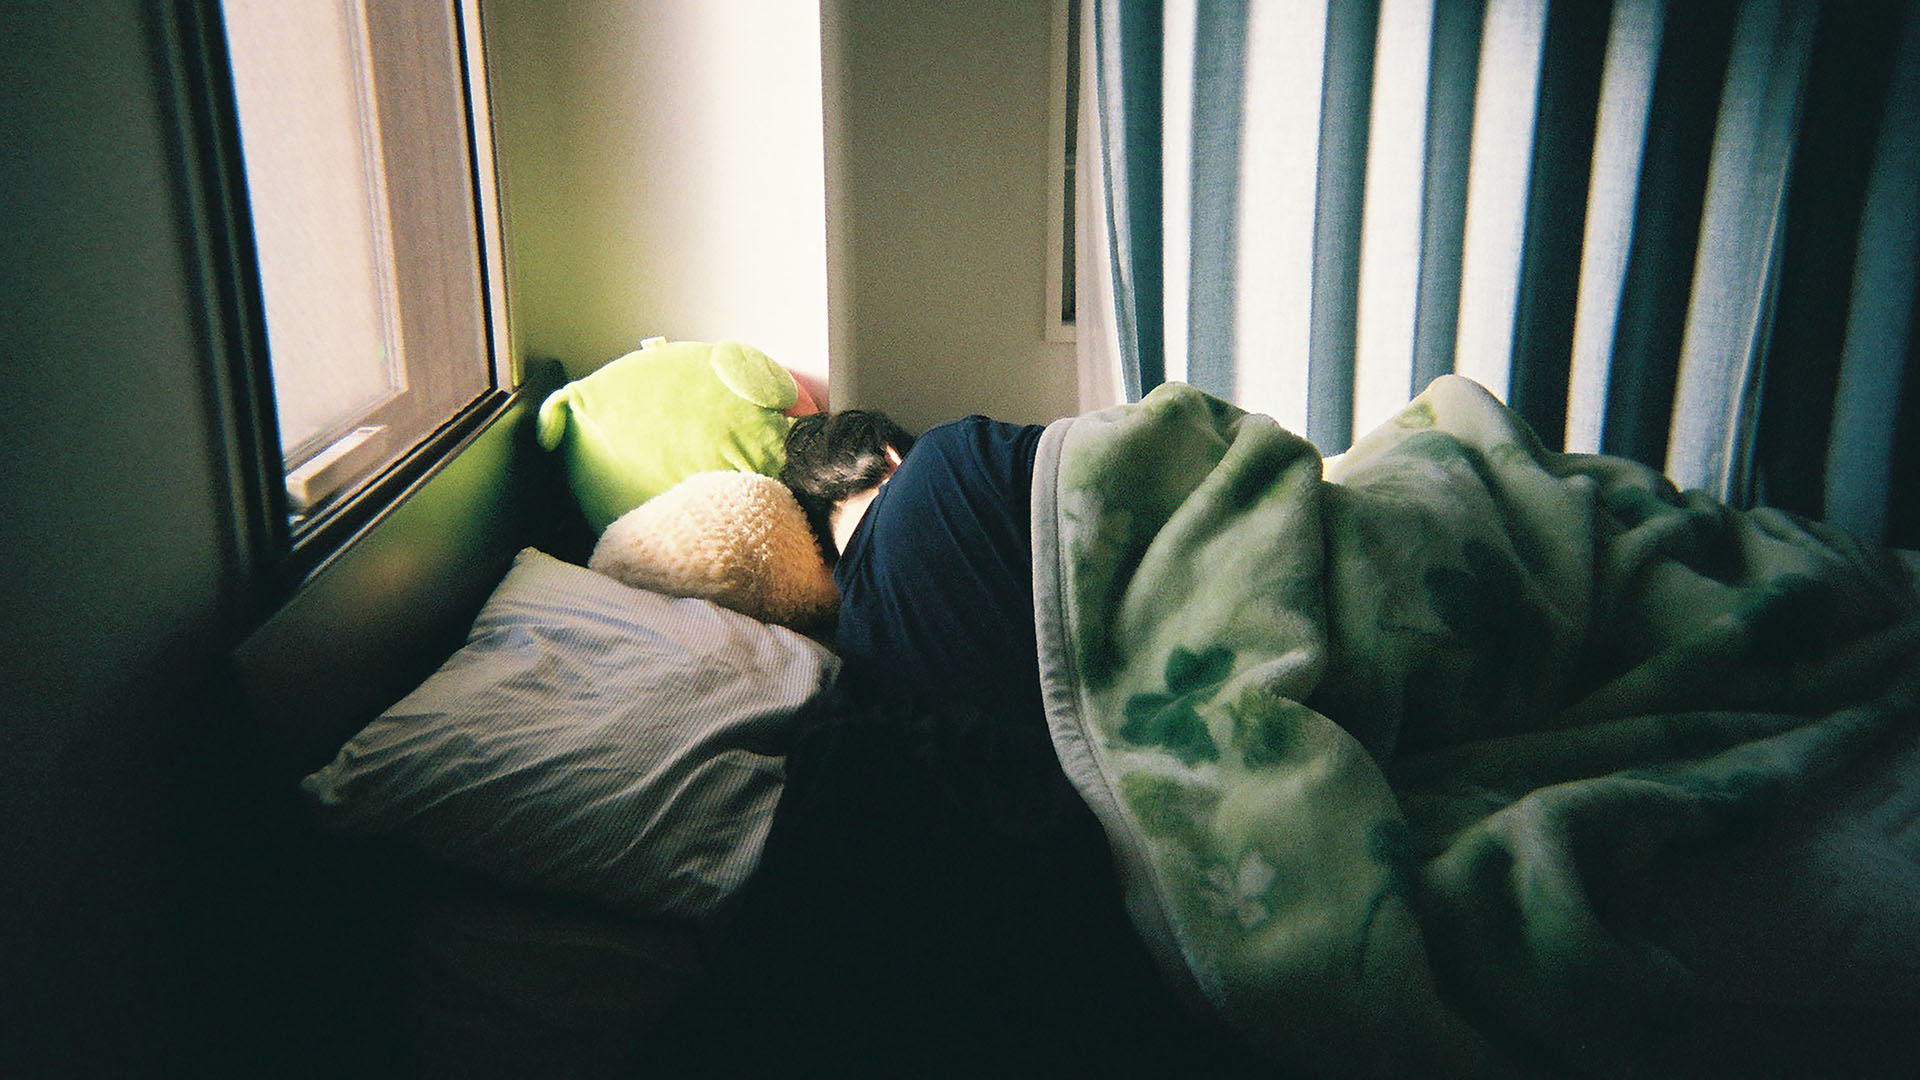 Una delle immagini più ripetute di persone depresse è che non vogliono alzarsi dal letto (Getty Images)